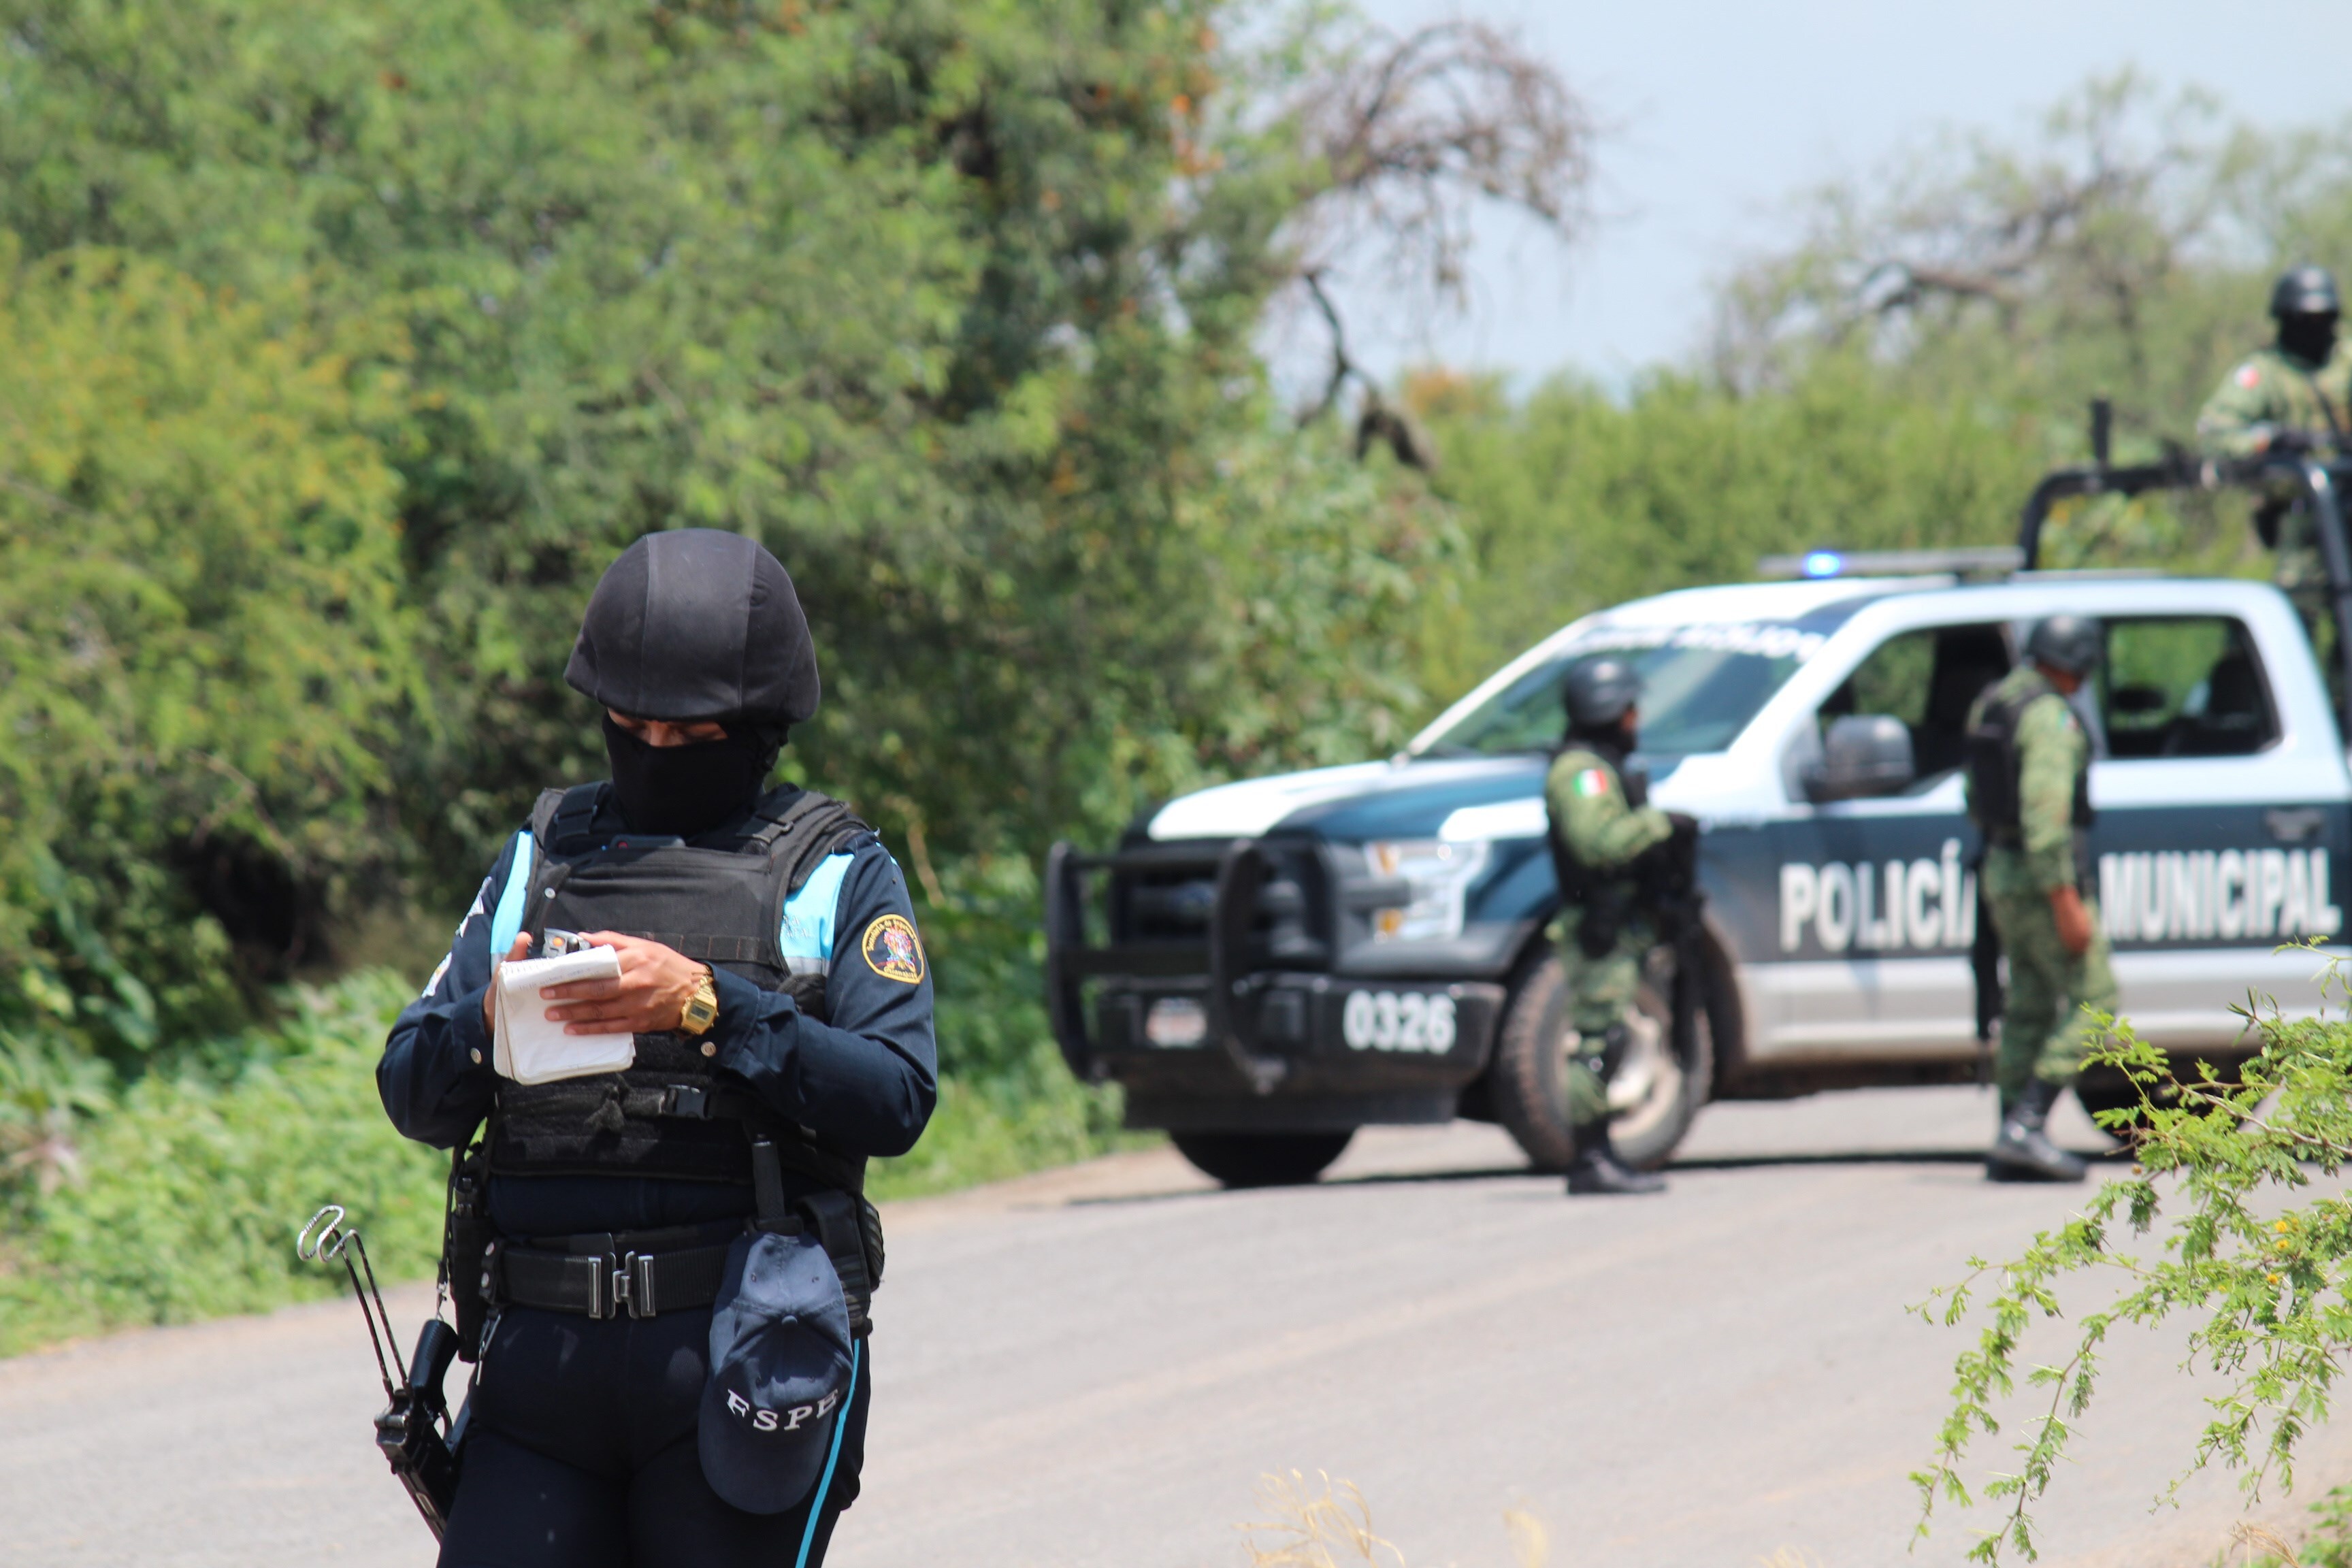 Mueren policías en ataques en Guanajuato - Página 2 HIIOL5XCBFGCPKDTJOEKEHJMIE